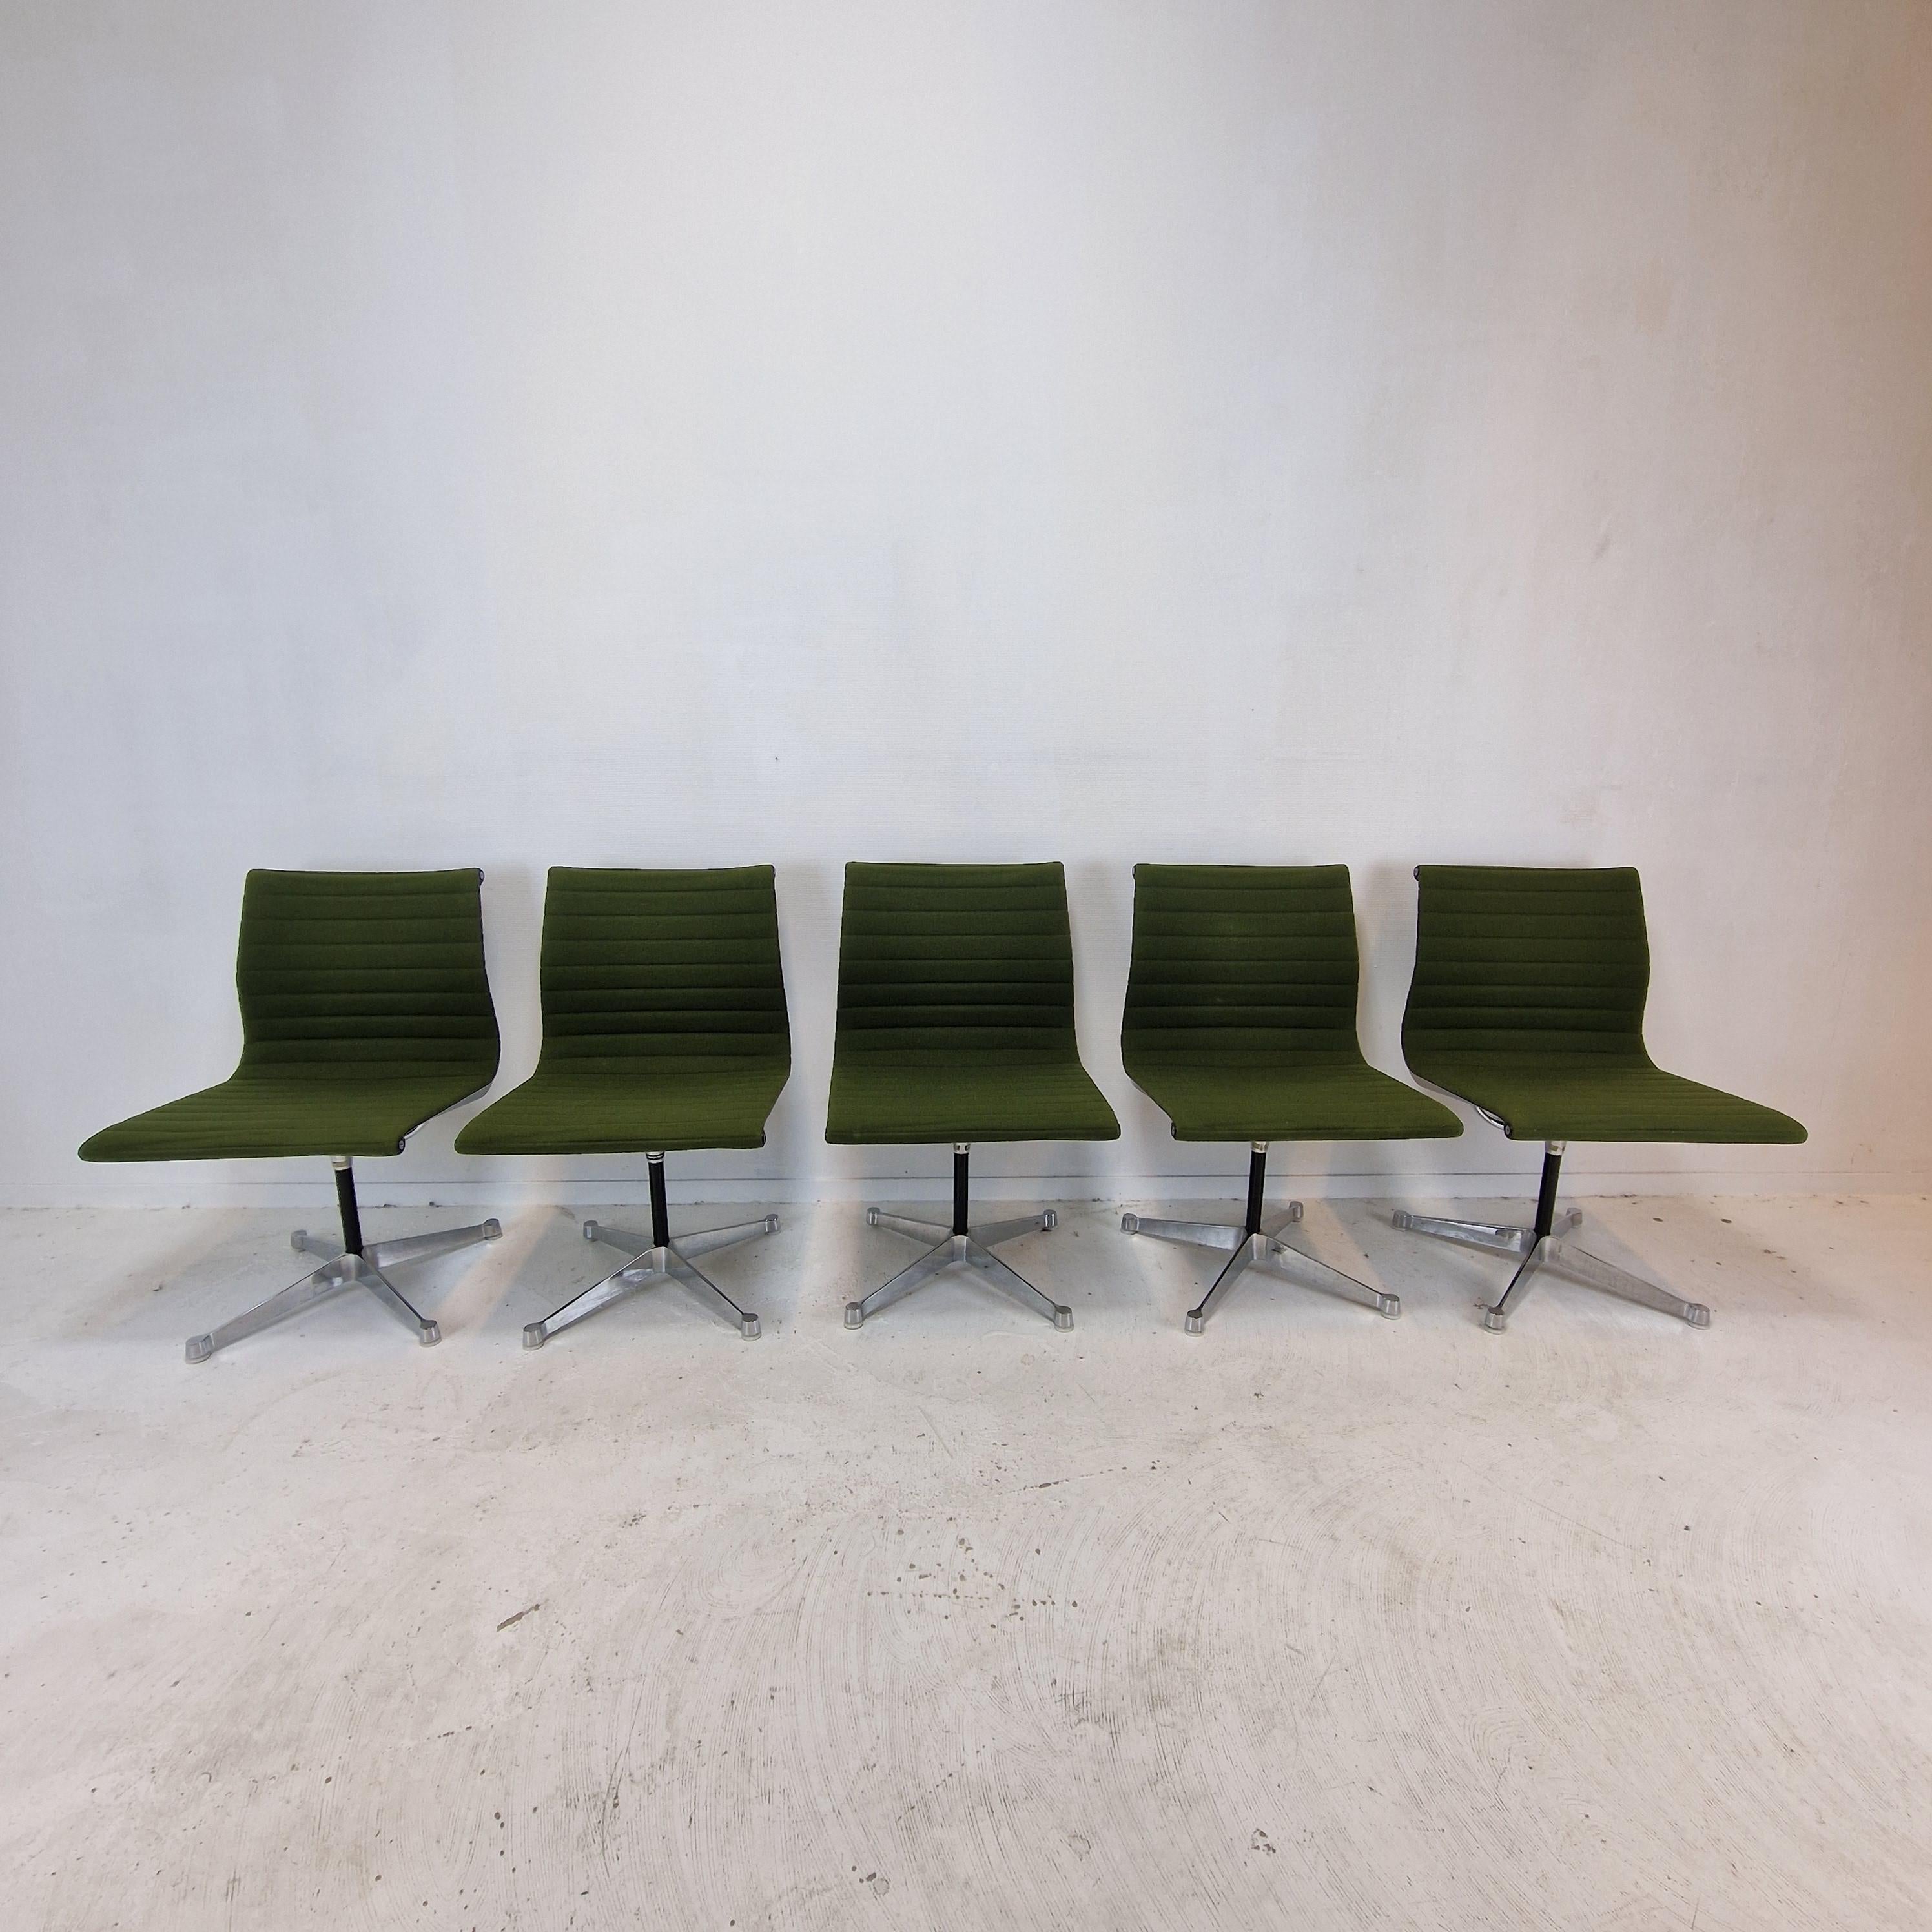 Sehr schöner Satz von 5 originalen EA105 Stühlen.
Diese Drehstühle wurden von Charles und Ray Eames entworfen und in den 70er Jahren von Herman Miller hergestellt.

Sie haben die originalen grünen 